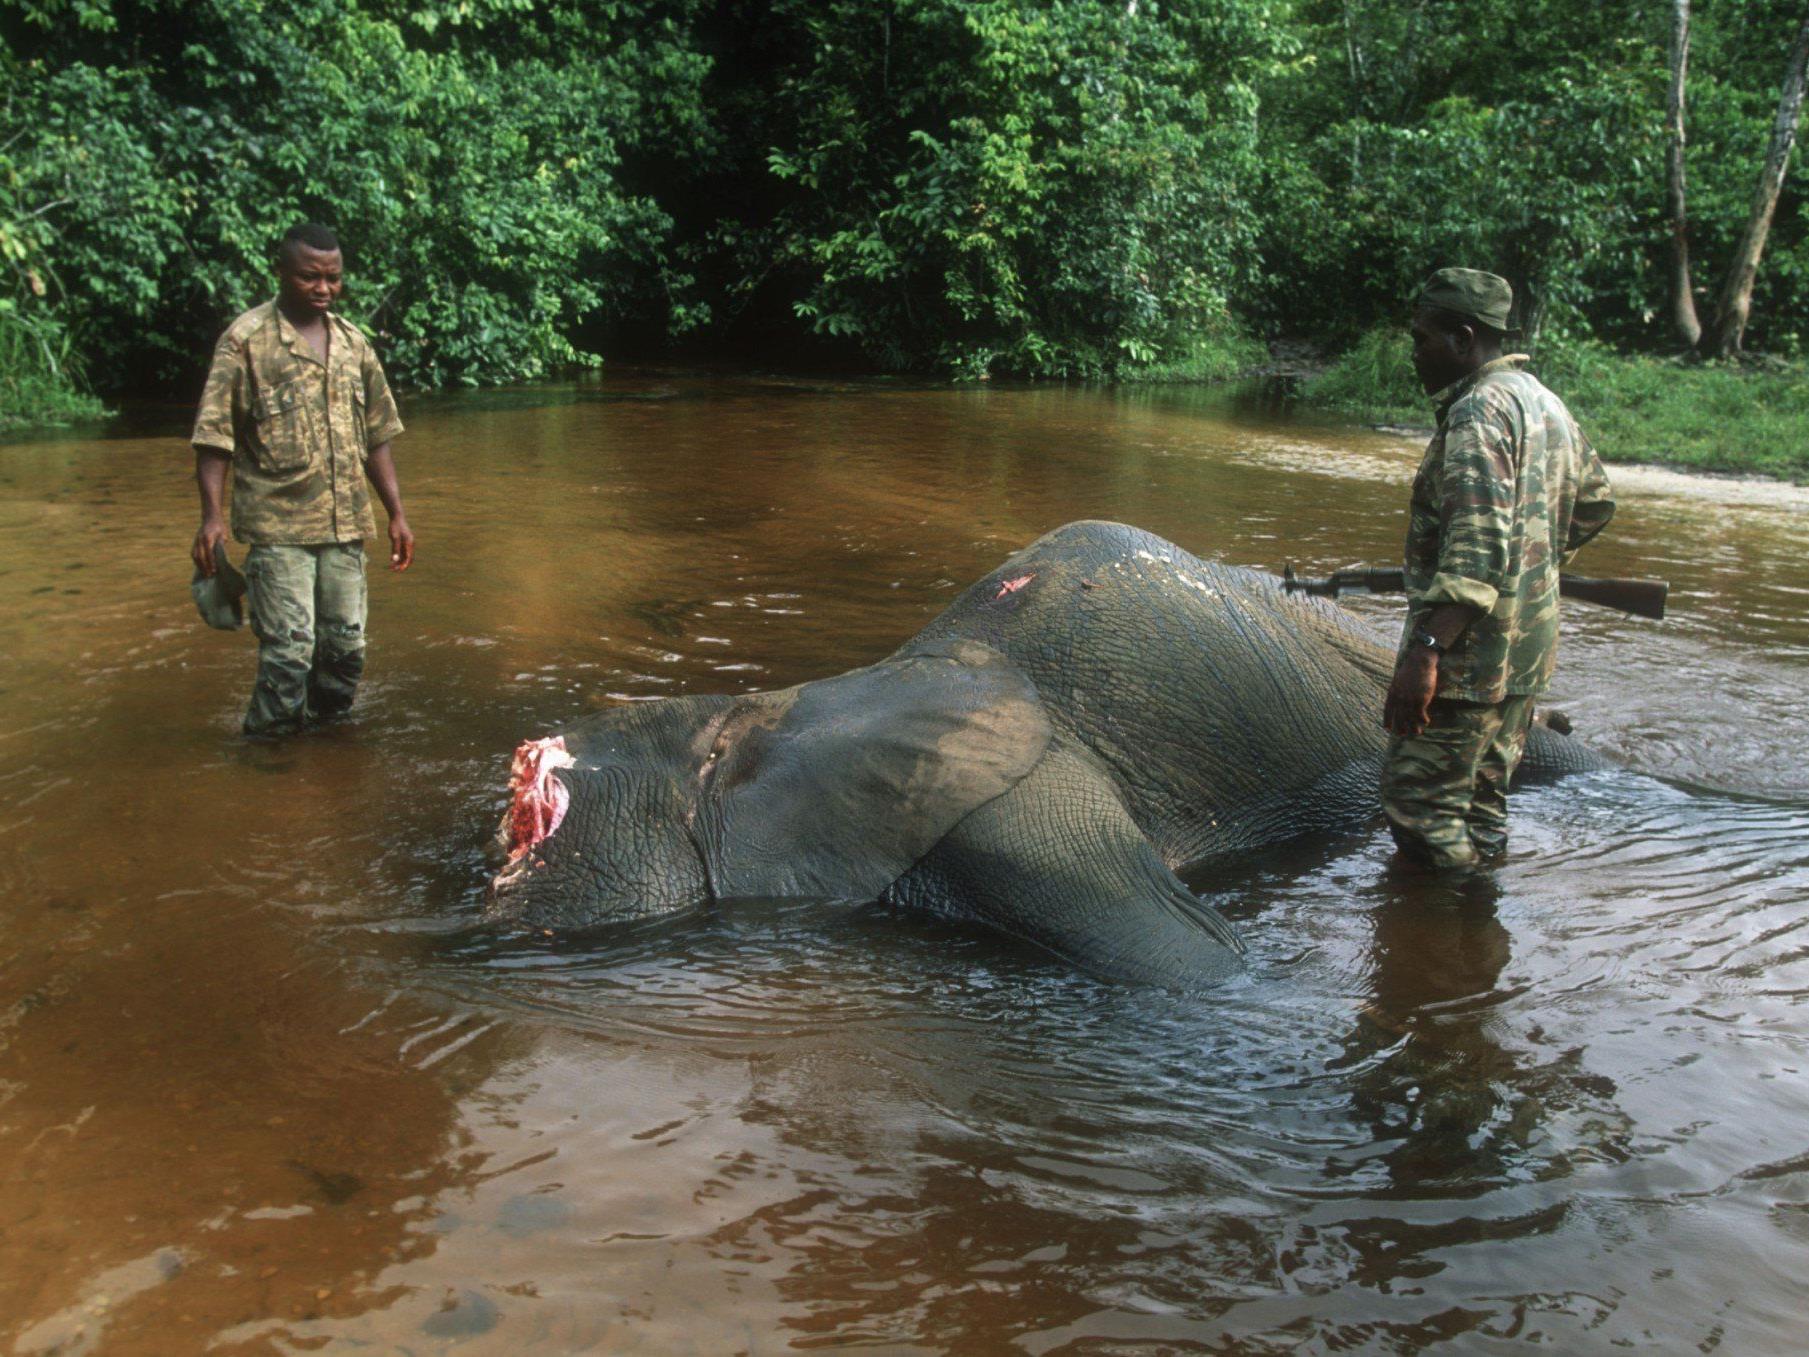 Die Umweltschutzorganisation wirft der Regierung vor, Wilderer zu schützen.